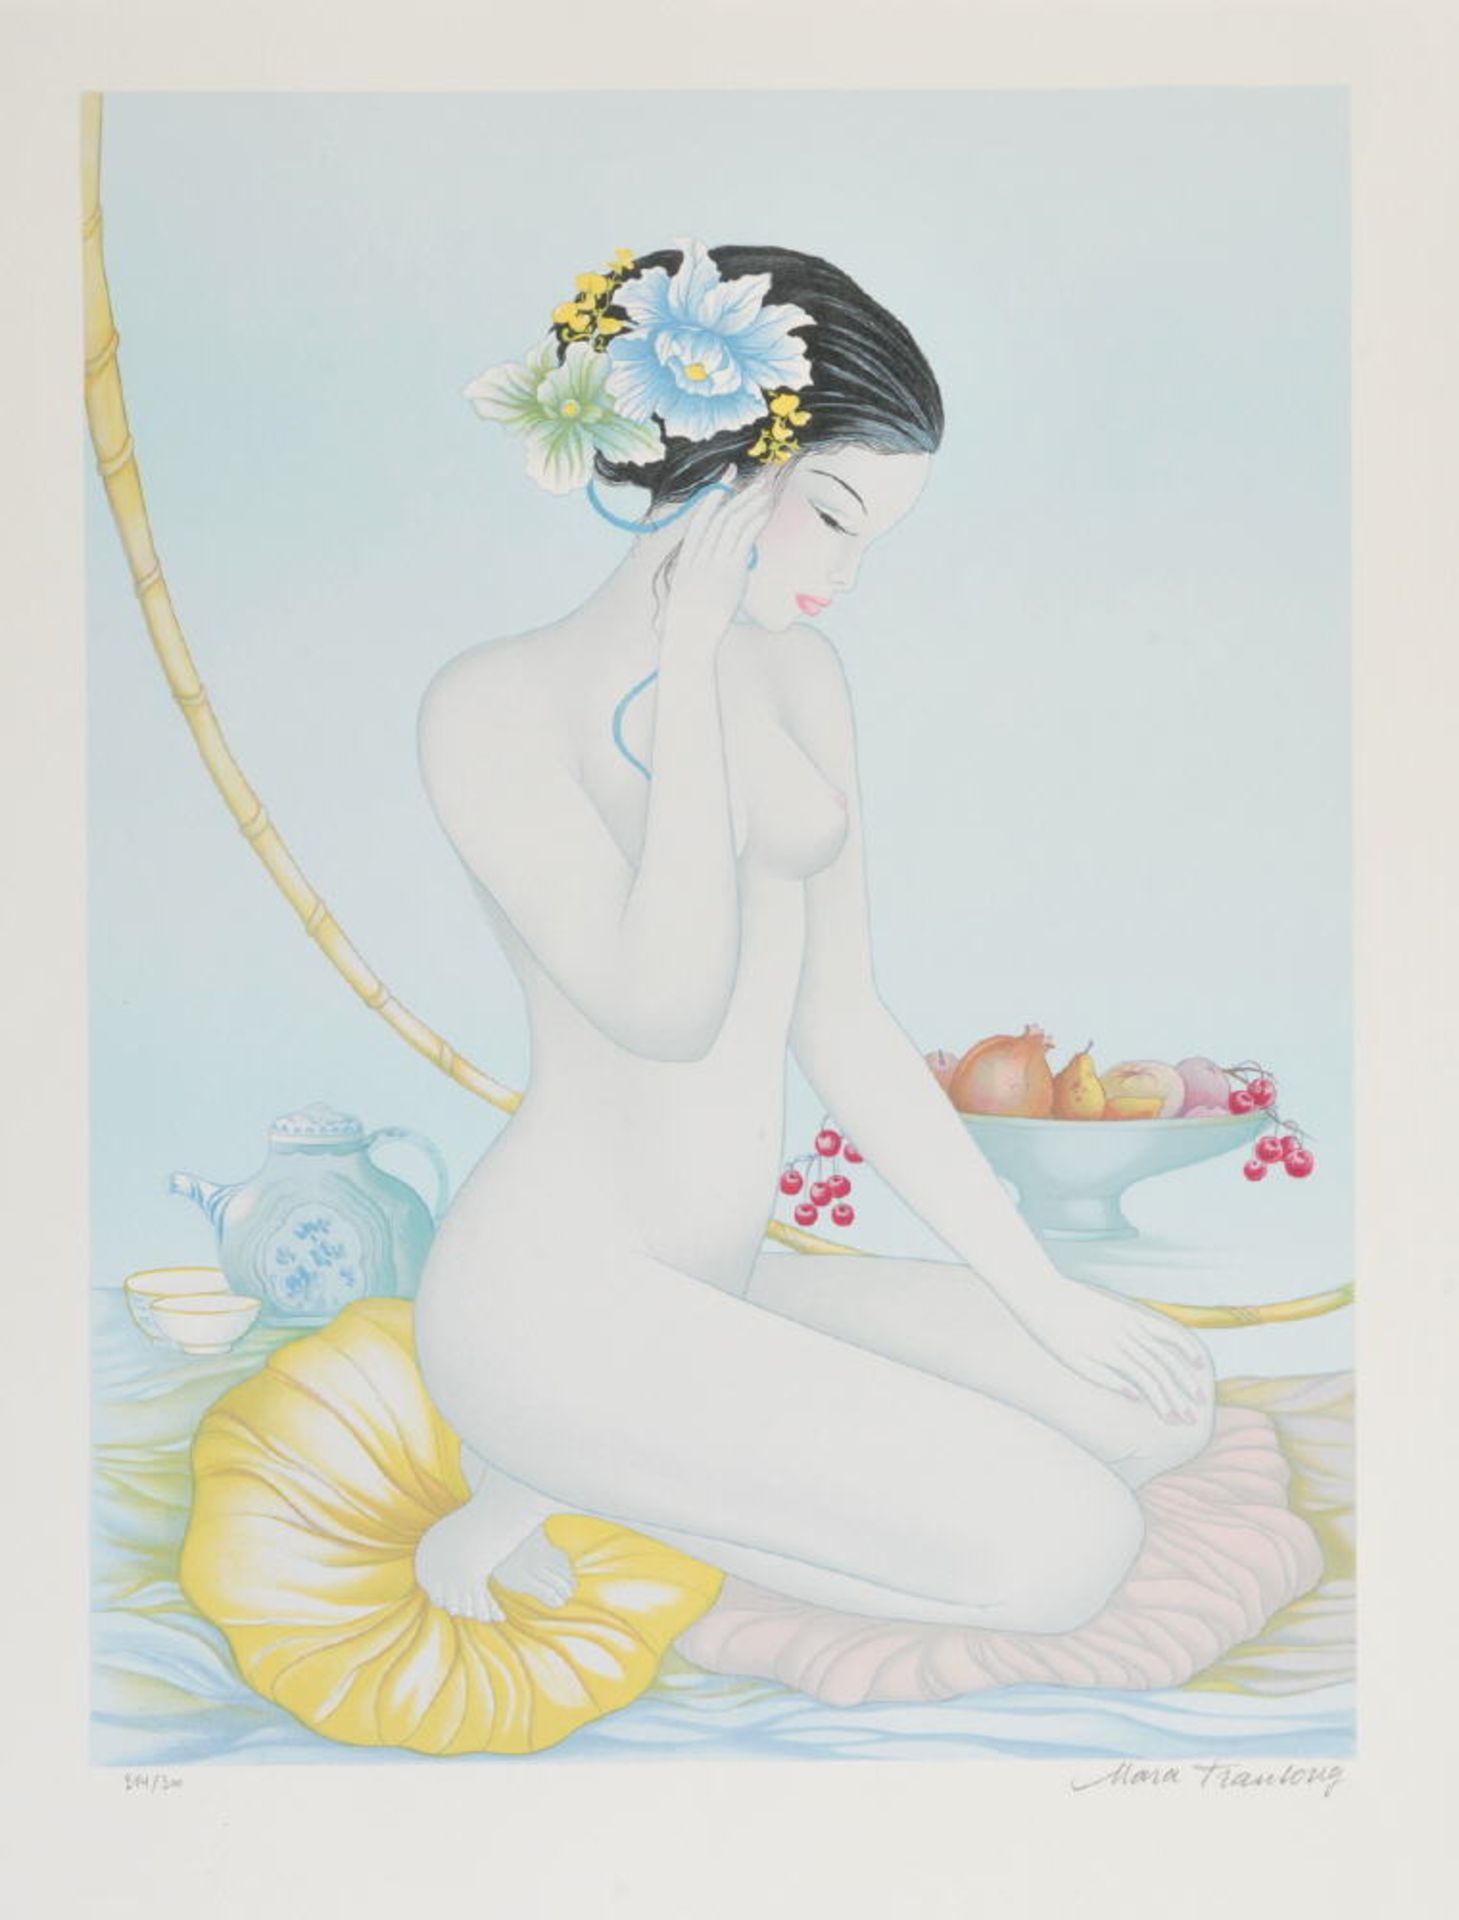 Tran-Long, Mara, 1935 MontaubanFarblithographie, 59,5 x 44,5 cm, " Frauenakt mit Teekanne und